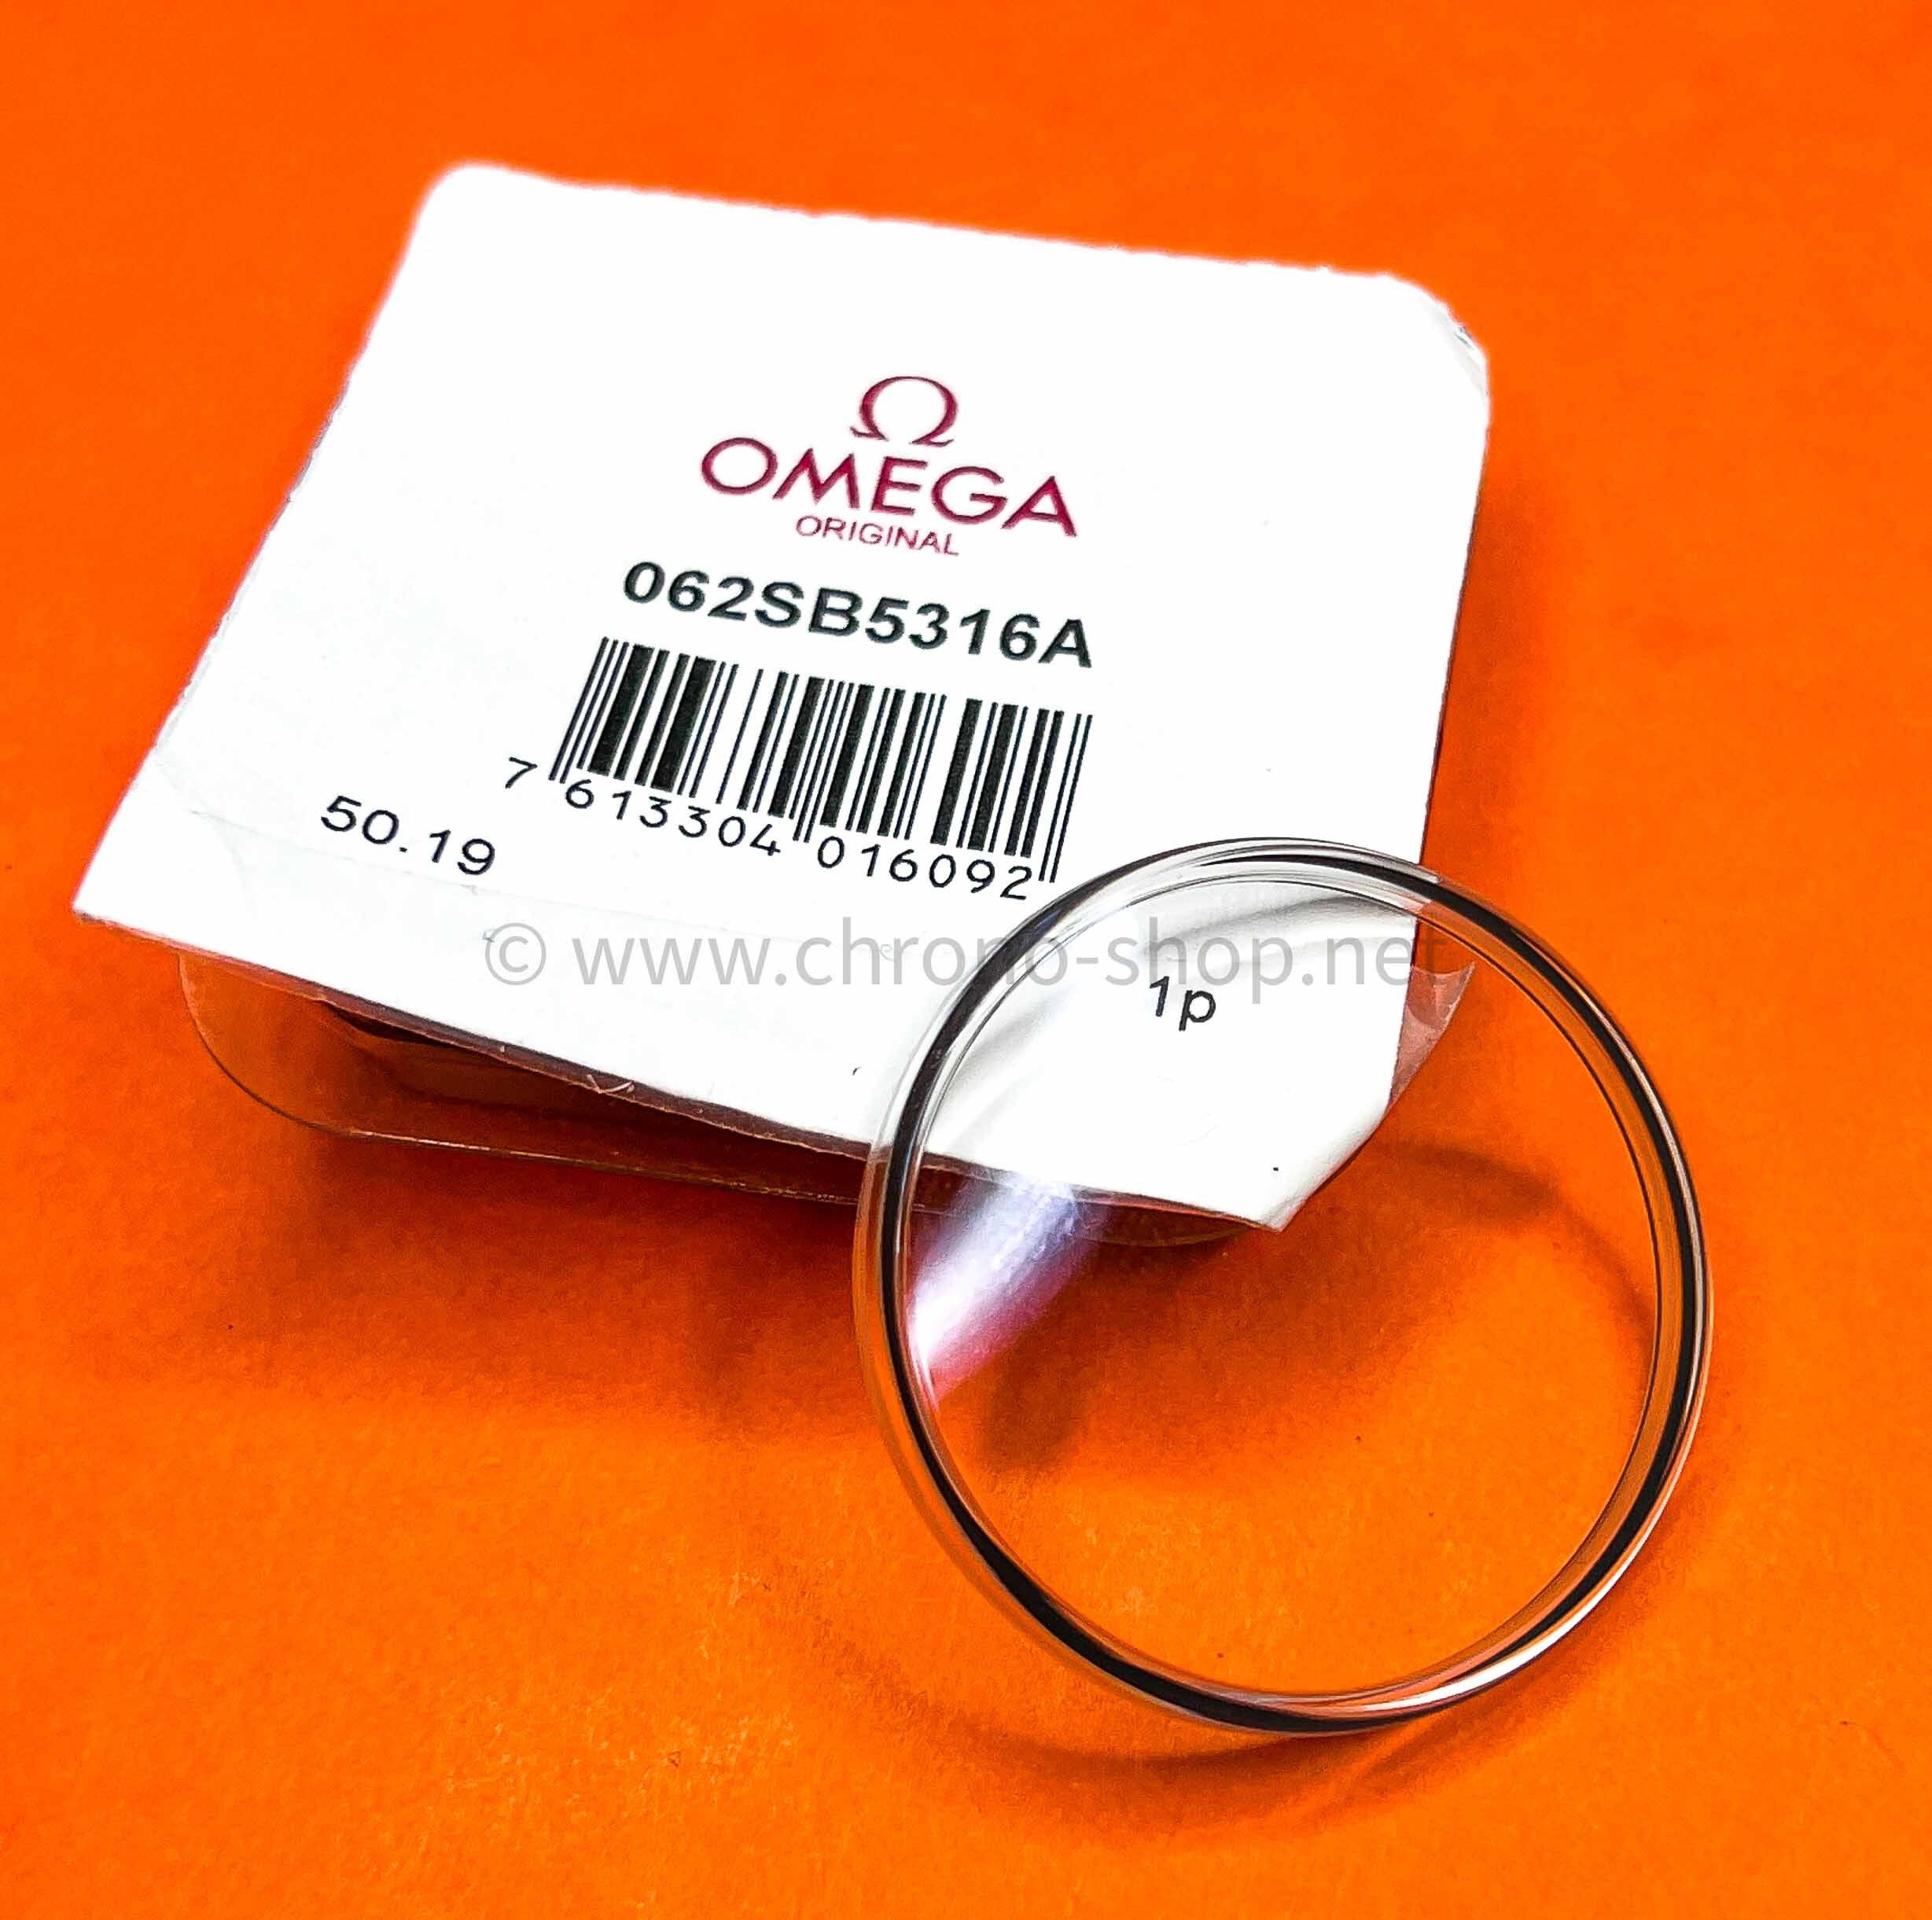 Omega Accessoire horlogerie montres Authentique Verre dôme plexiglas Hesalite ref 062SB5316A